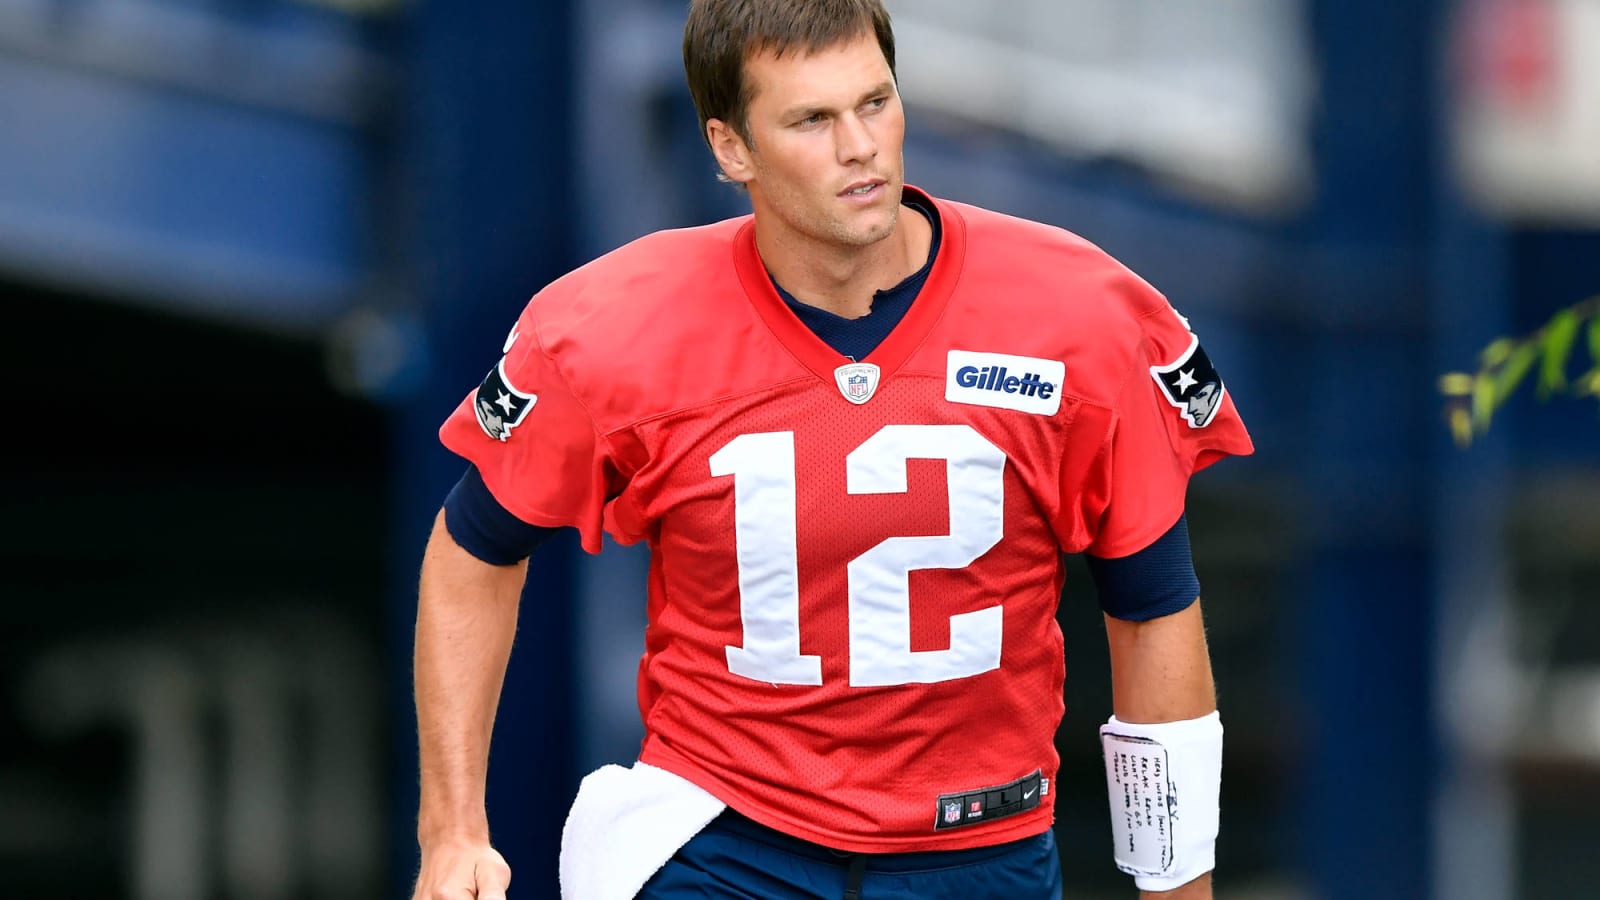 Twitter wishes Tom Brady a happy 41st birthday